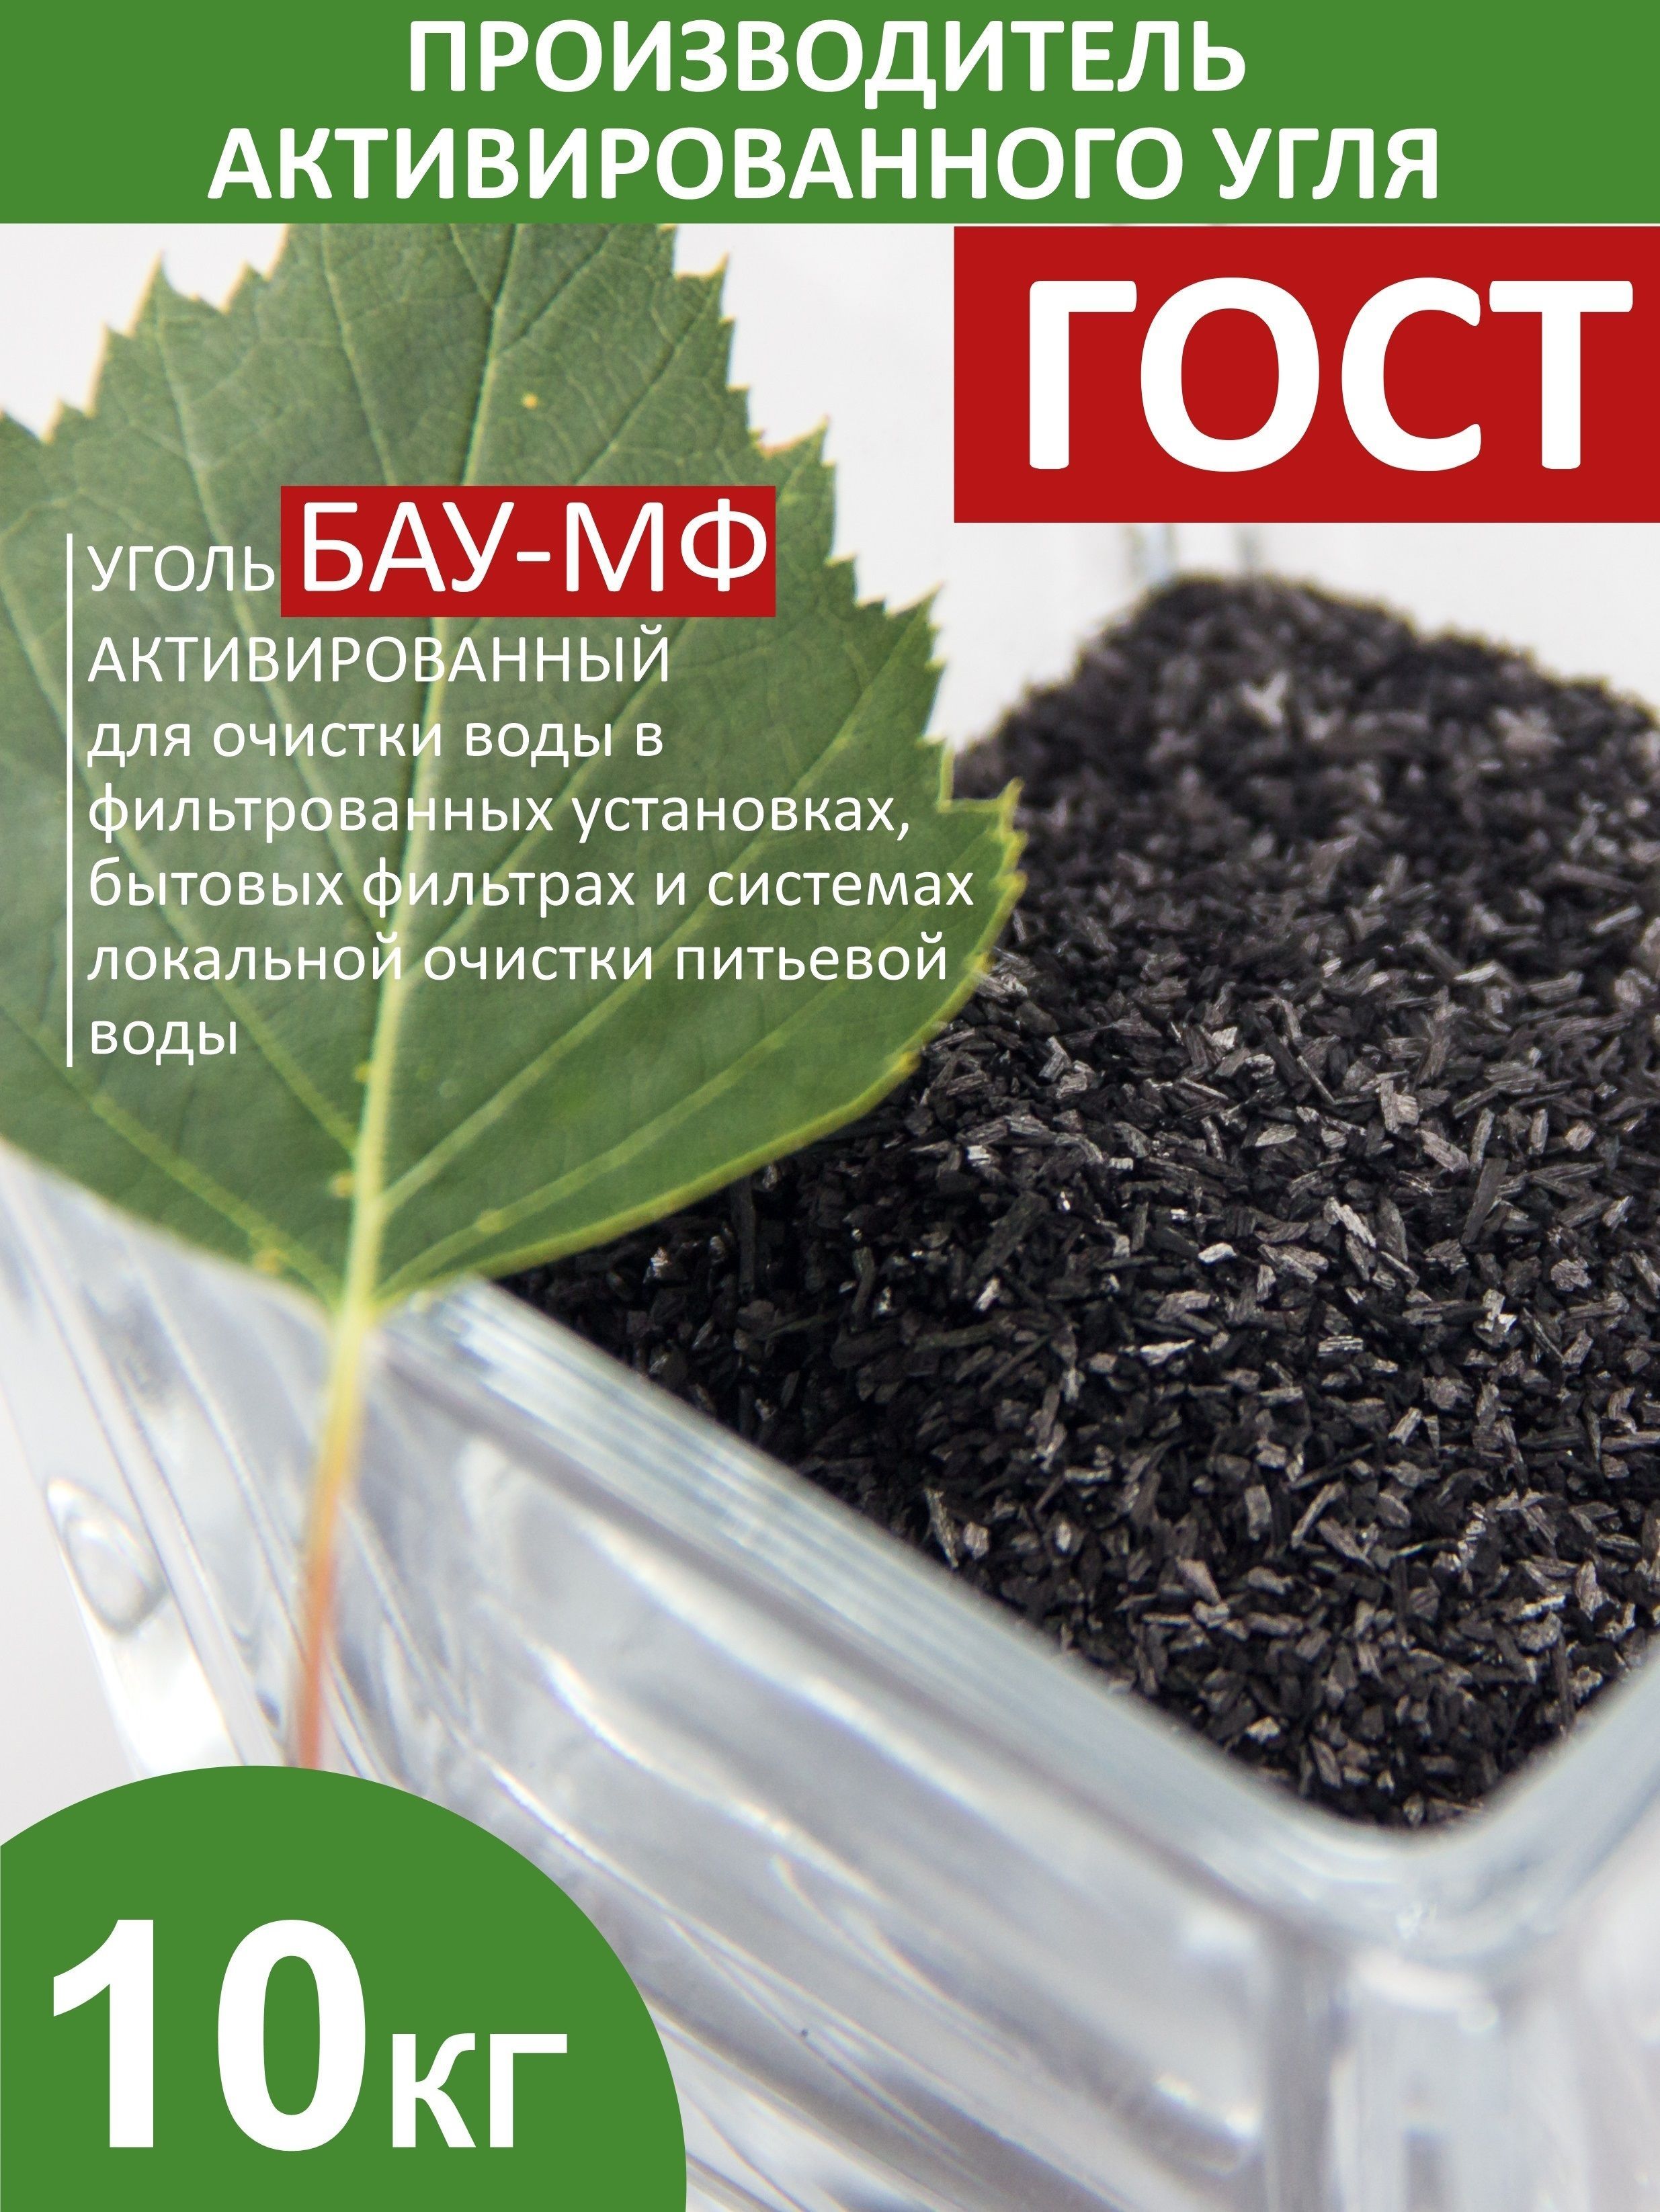 Активированный уголь NWC для фильтров — купить в Москве, каталог ГК «Экволс» с ценами